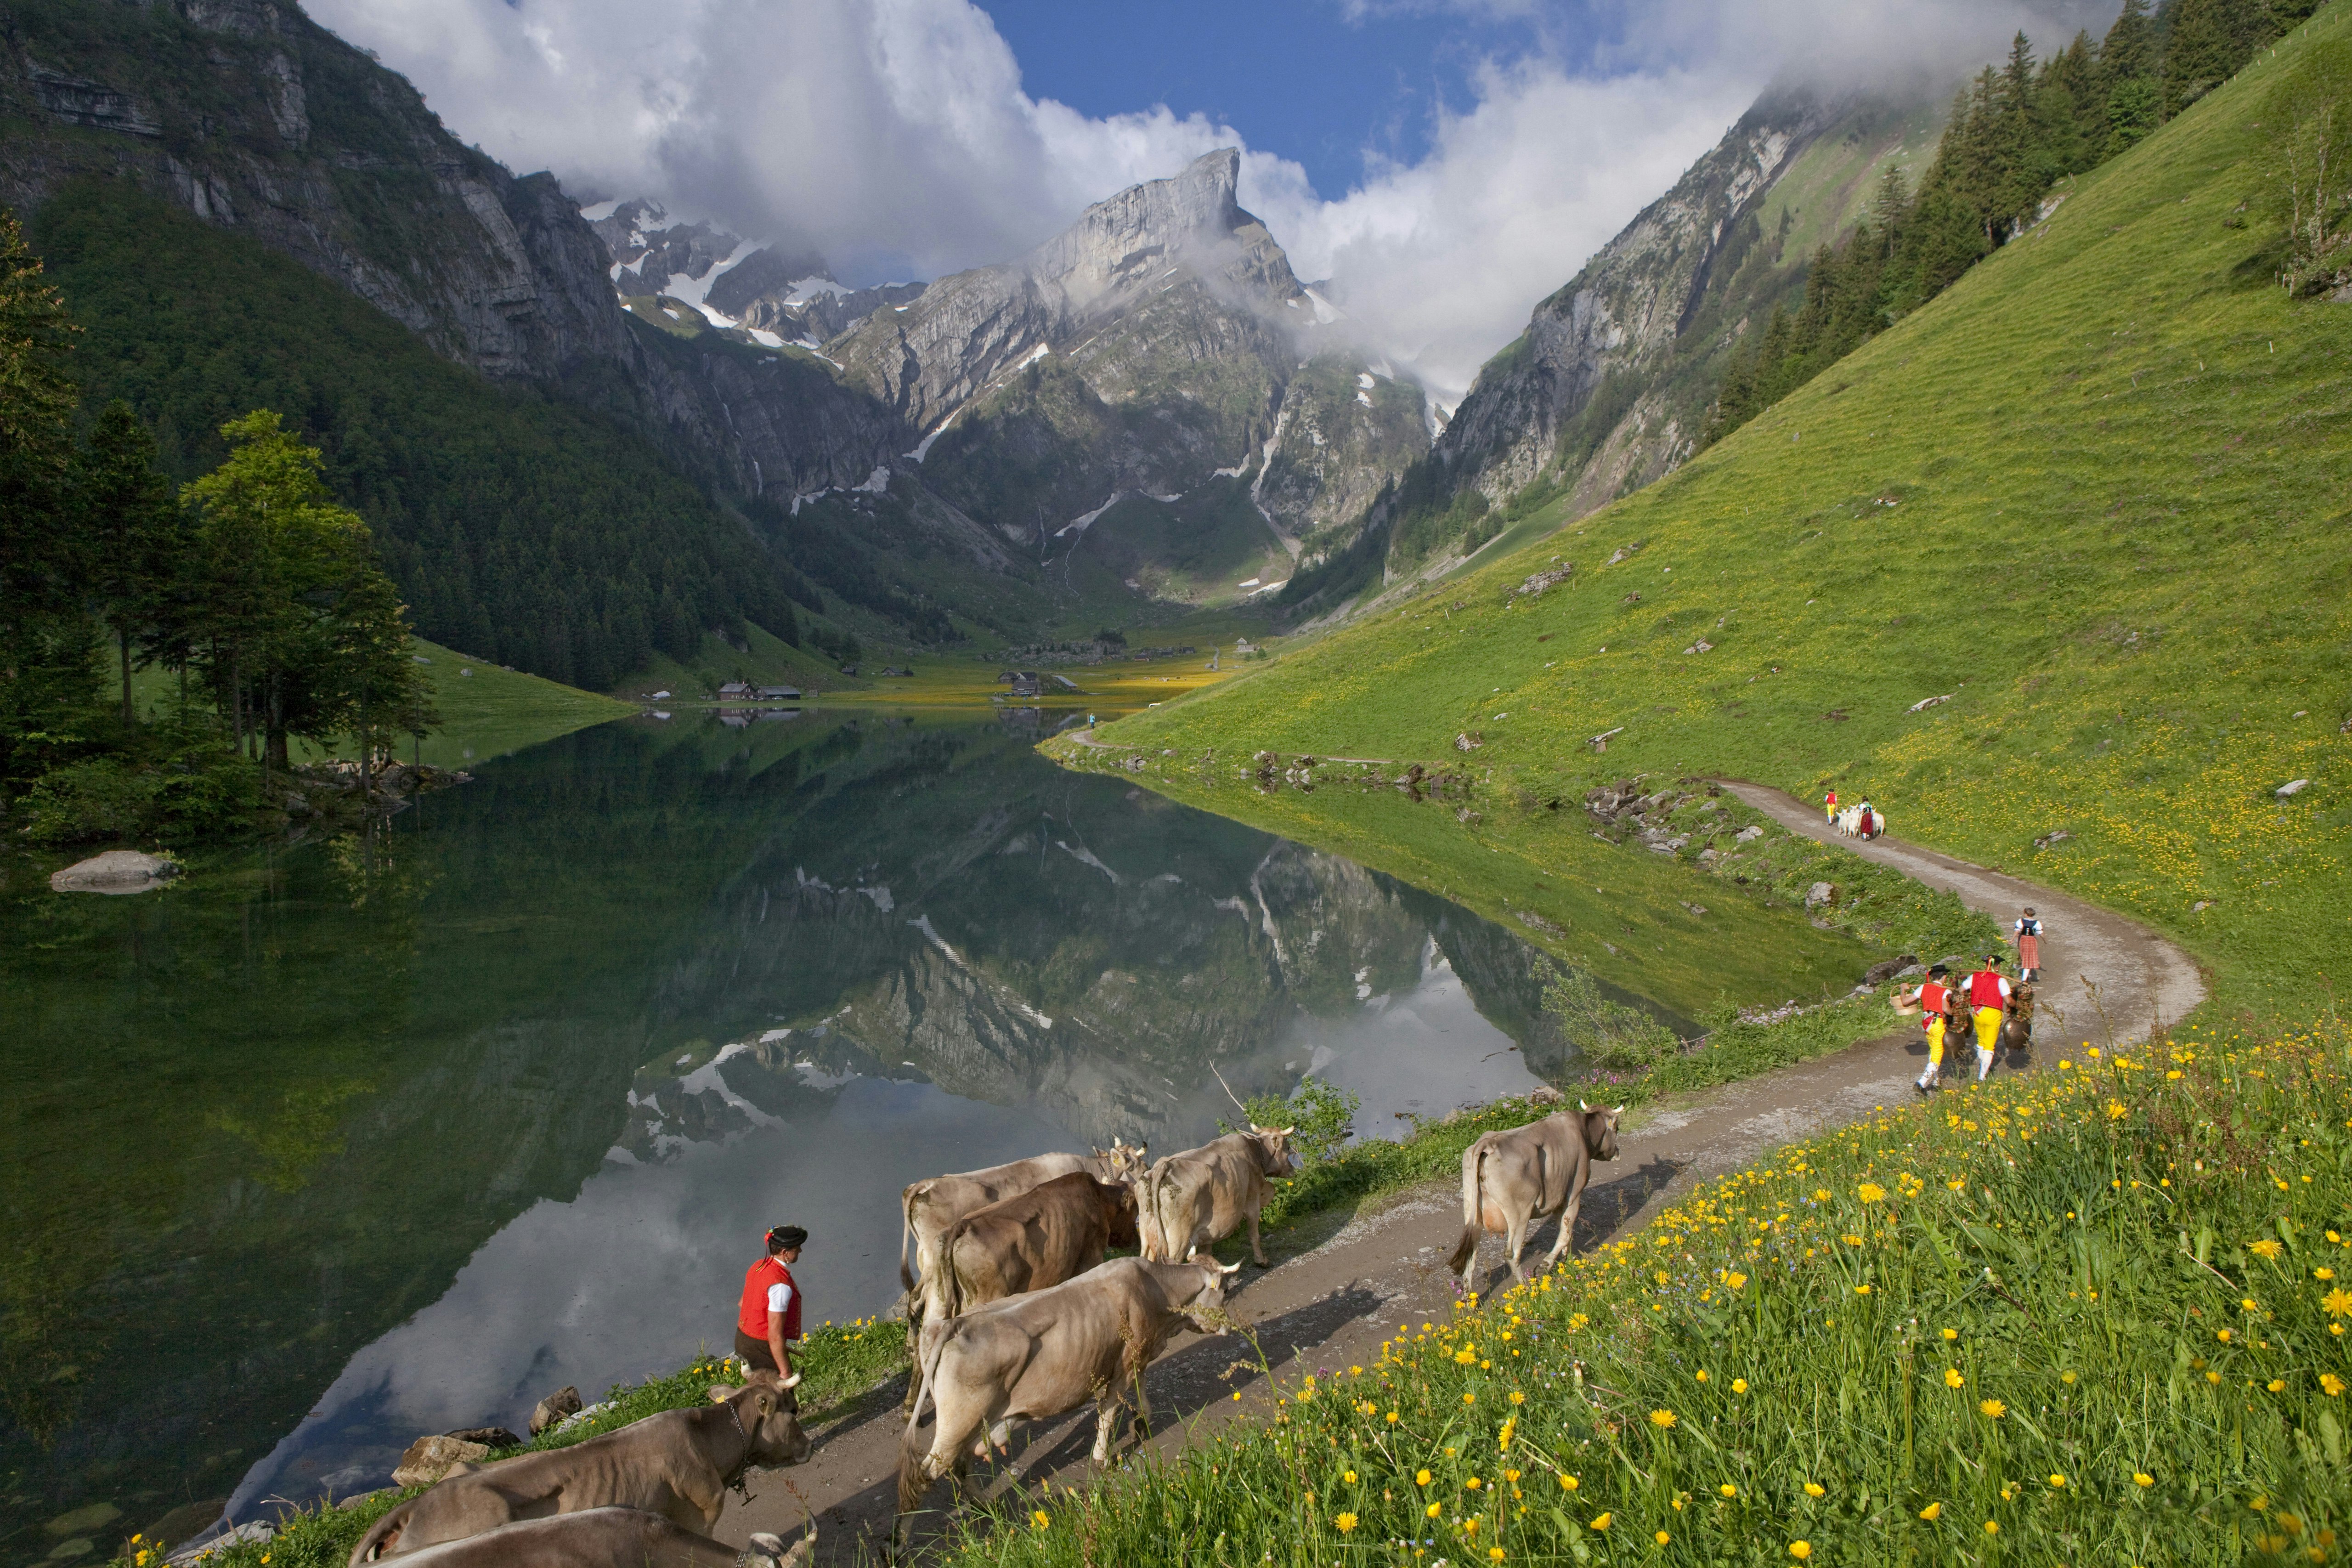 Alpkoherdare som tar hem korna längs slingrande stigar genom vackra alpina ängar med taggiga stentoppar som sticker upp i bakgrunden från det gröna gräset